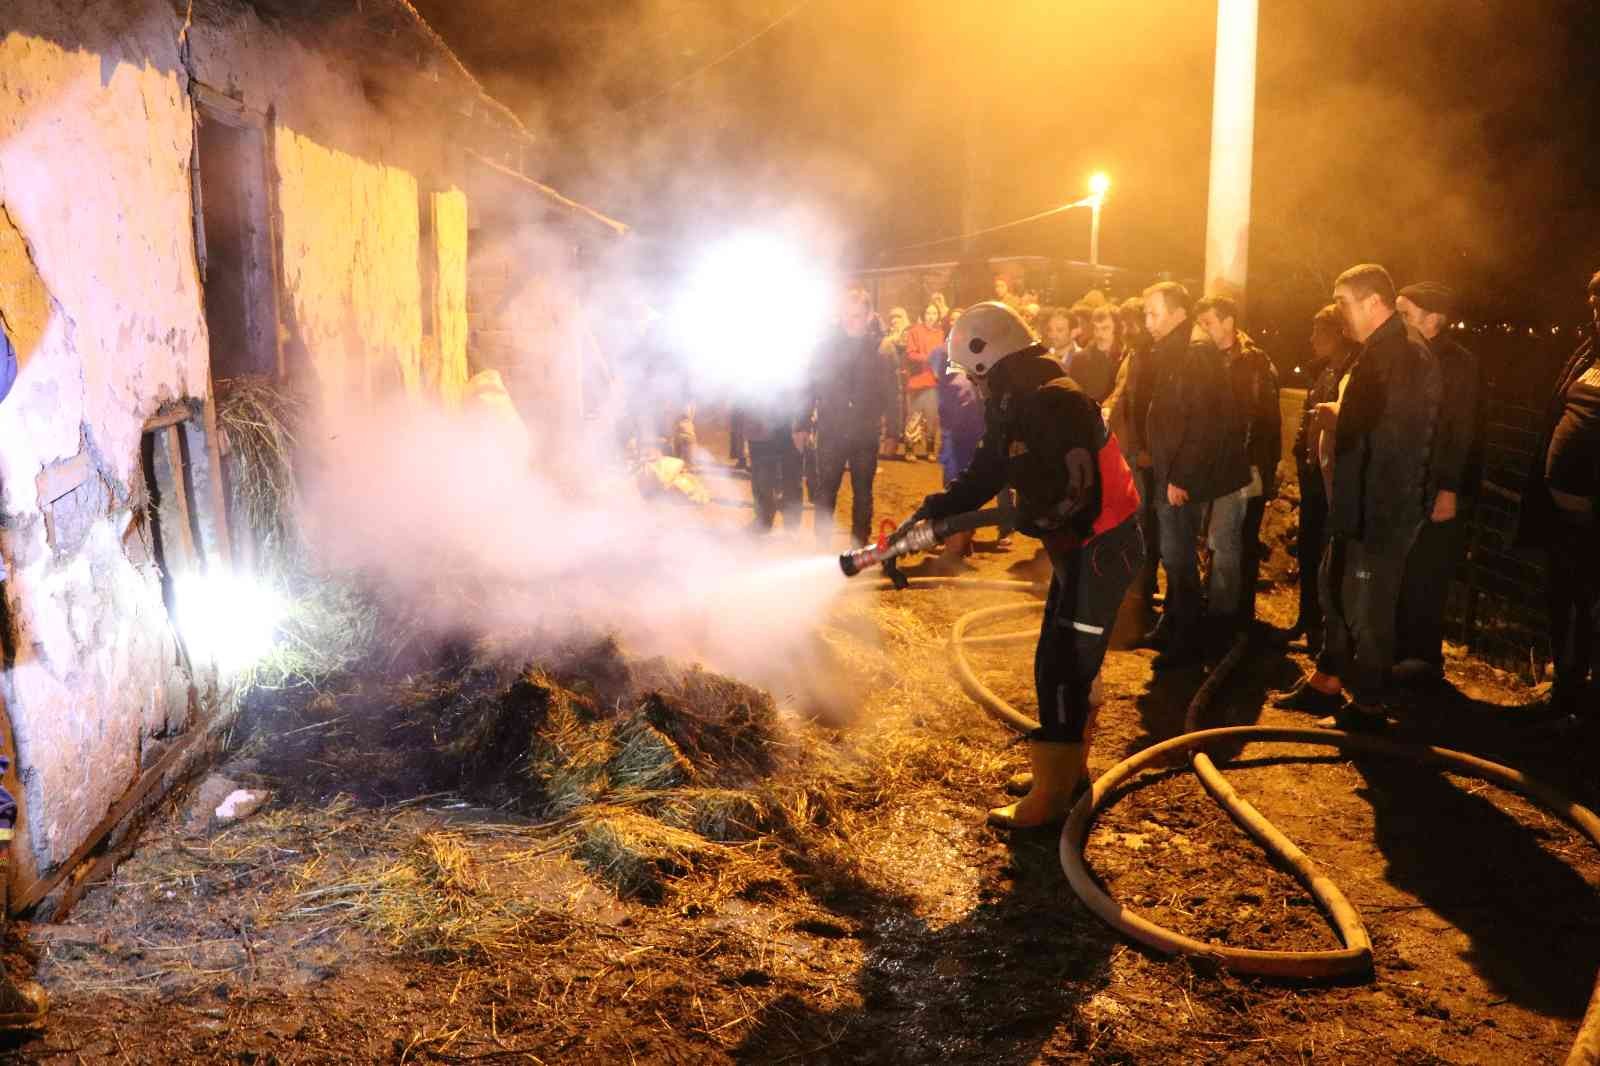 Amasya’da samanlık yangını: 100 balya saman kül oldu #amasya